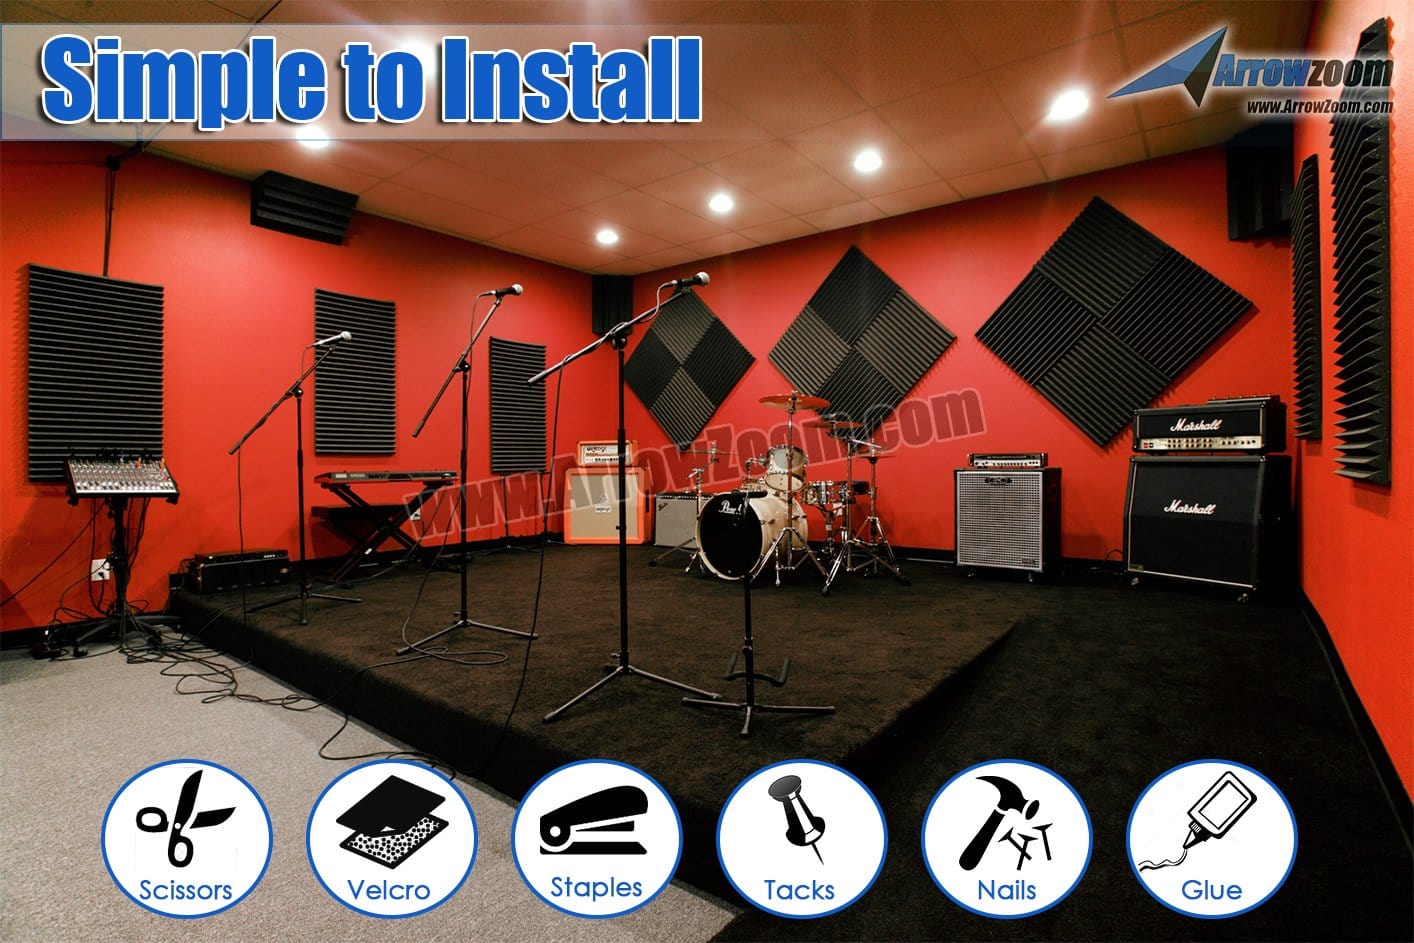 New 48 pcs Bundle Bevel Grid Type Acoustic Panels Sound Absorption Studio Soundproof Foam 7 Colors KK1046